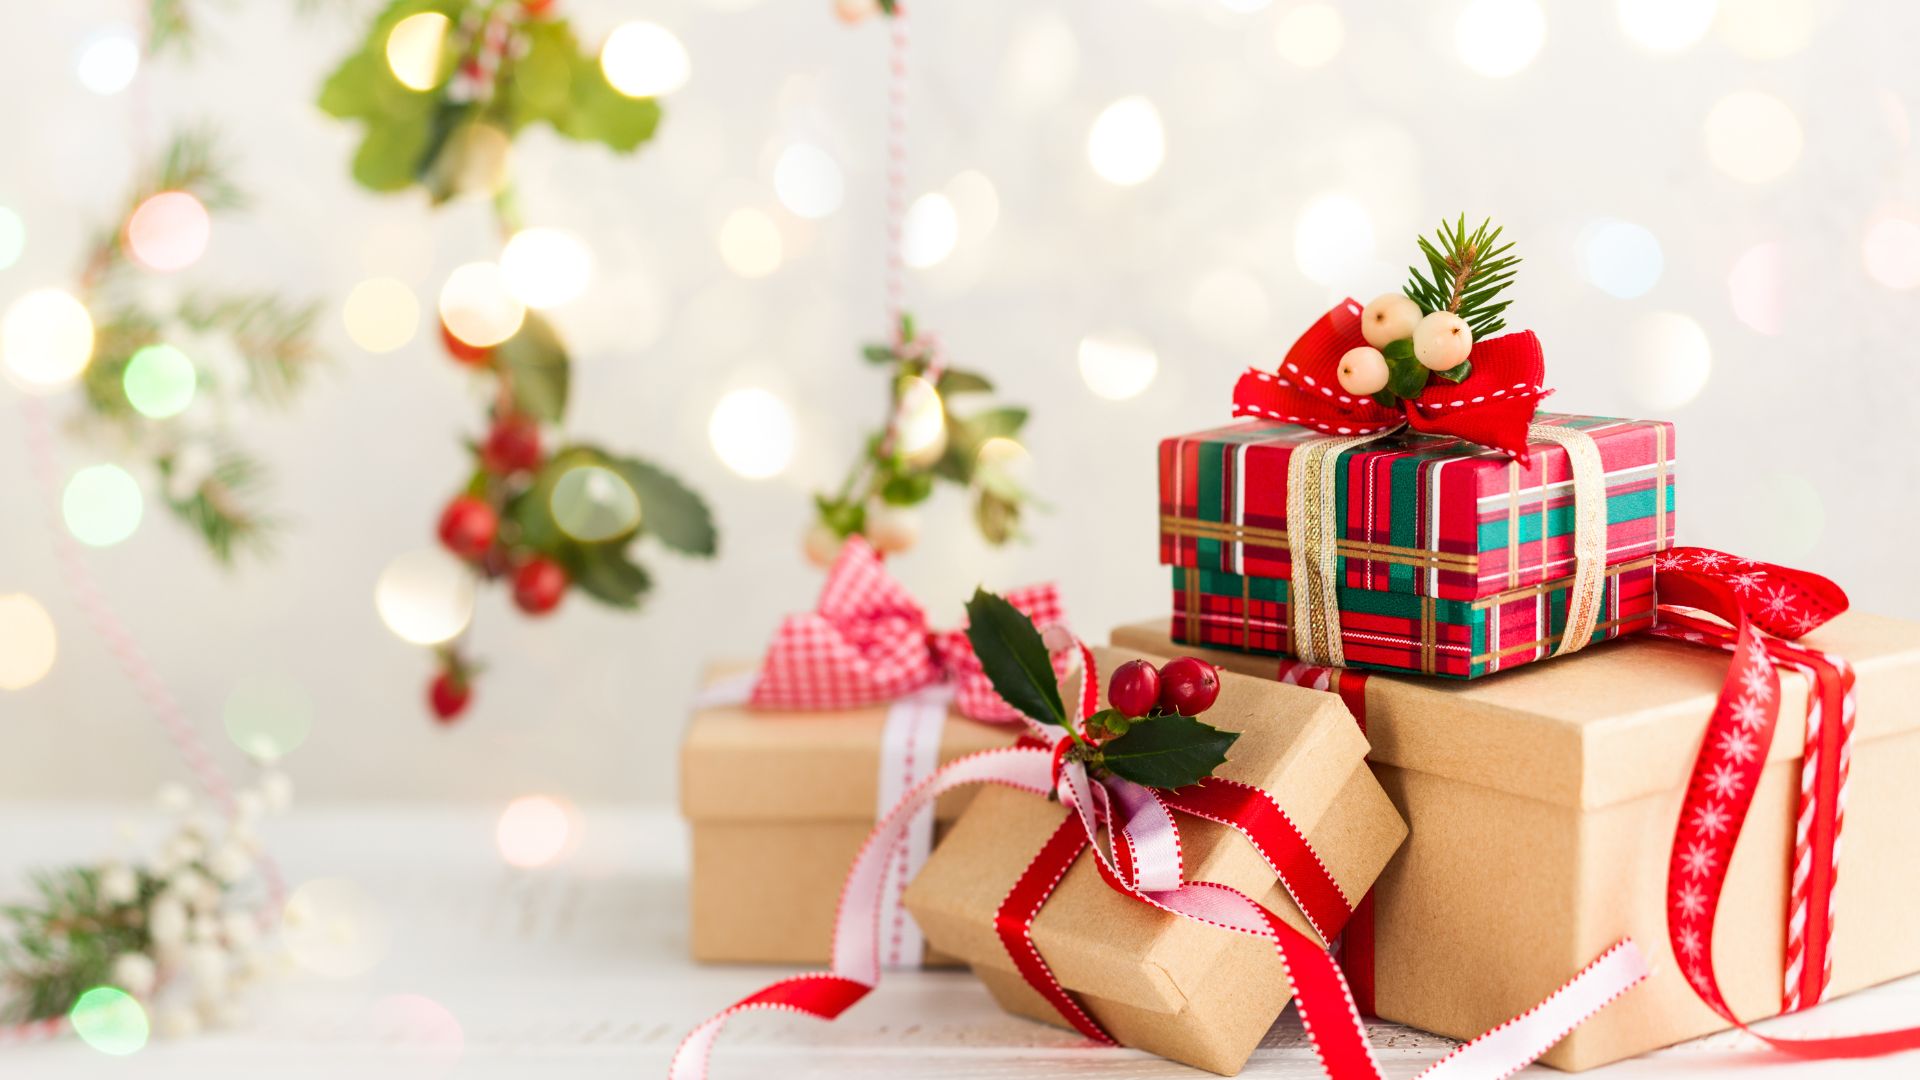 Imagem de fundo branco com luzes dourada. Do lado direito da tela várias caixas de presentes enfeitadas com laços e outros elementos natalinos.